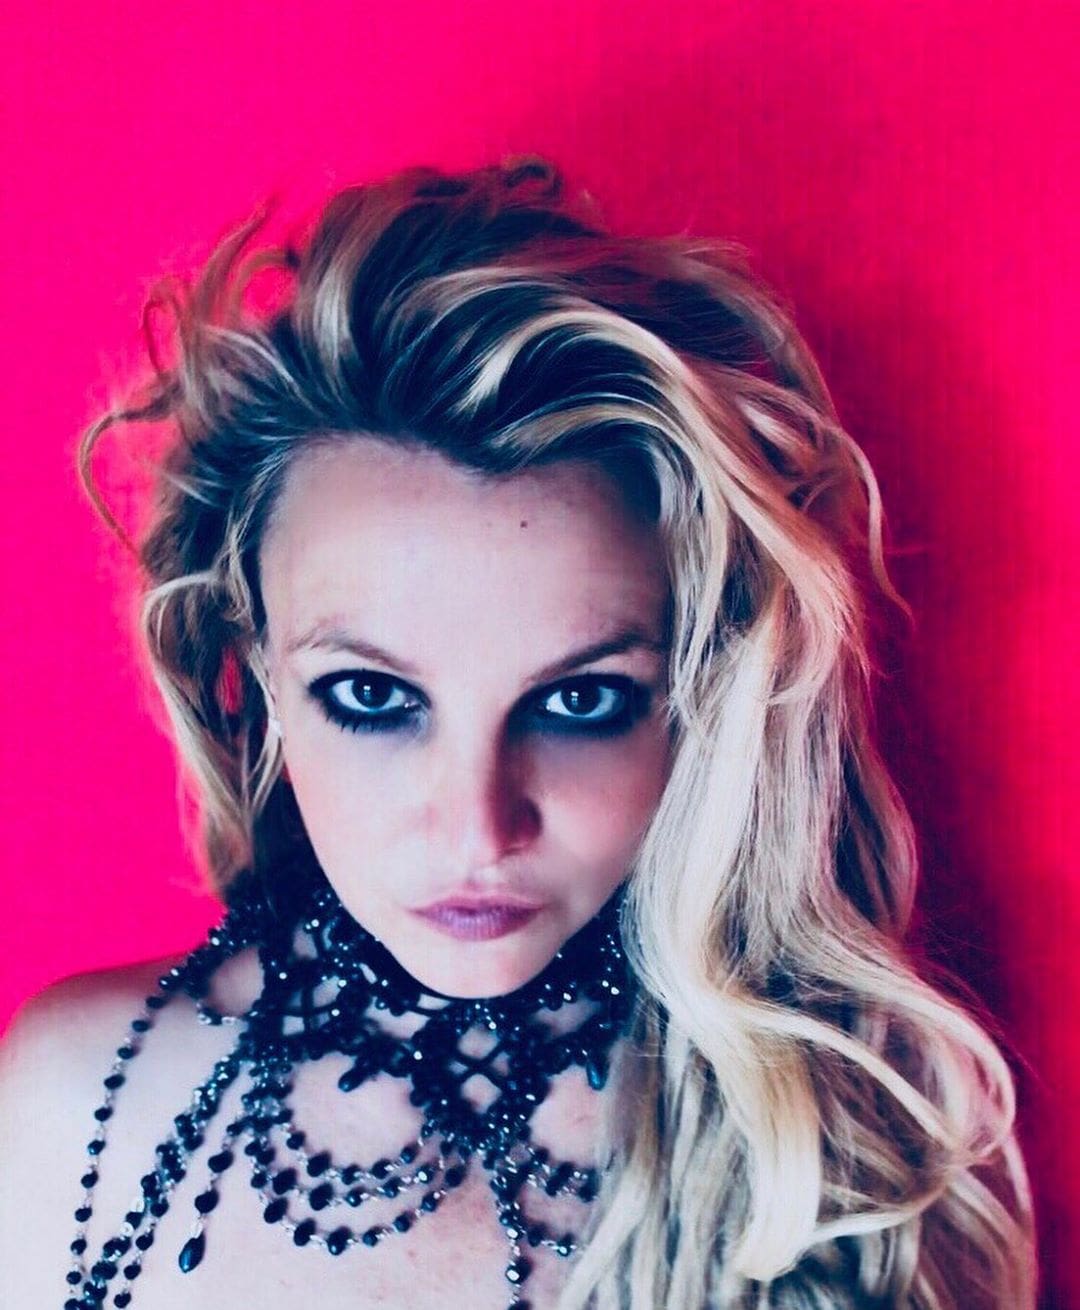 Britney Spears registra nova música com ex-integrante de banda gospel australiana